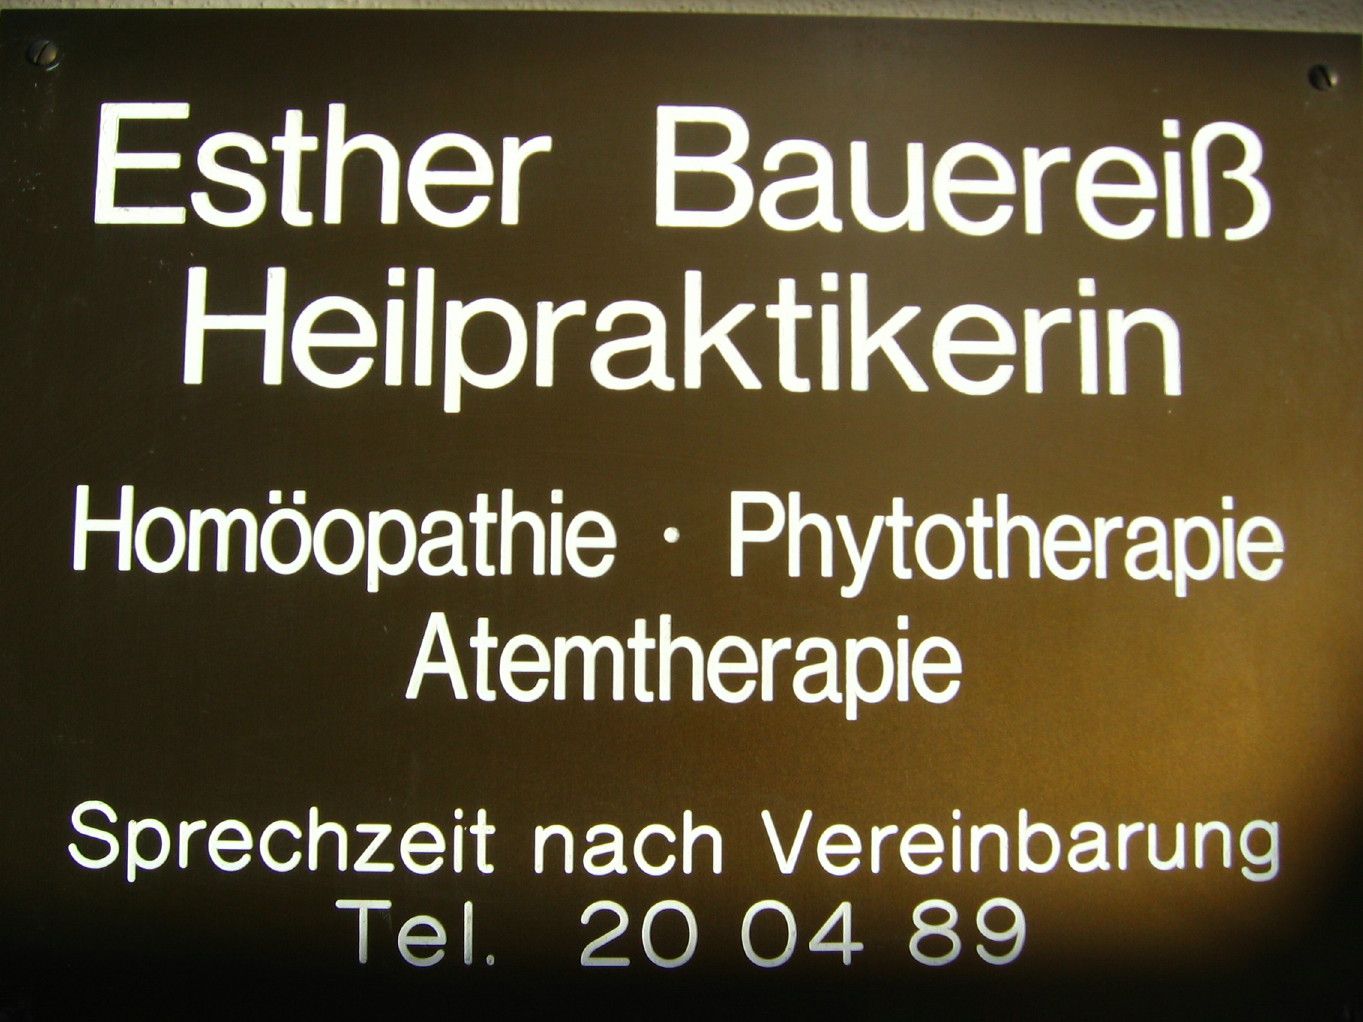 Naturheilpraxis Esther Bauerei, Heilpraktikerin Bamberg, Homopathie Phythotherapie Atemtherapie